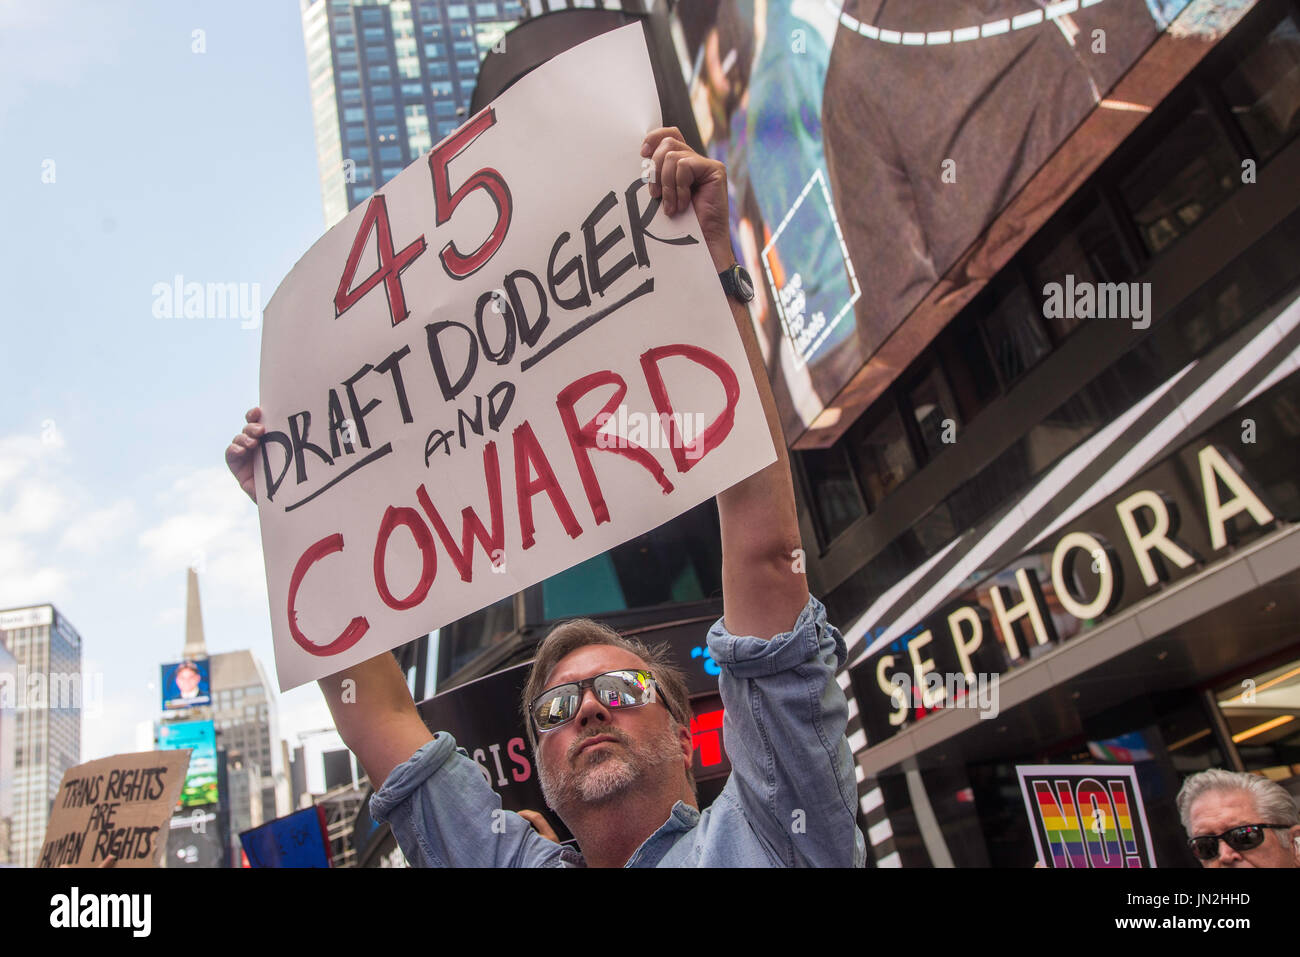 New York, NY 26 juillet 2017 en réponse au Président du Trump tweet d'interdire les personnes transgenres de l'armée de défenseurs, les militants, et les alliés ont convergé sur le Centre de recrutement militaire à Times Square en signe de protestation. ©Stacy Walsh Rosenstock/Alamy Live News Banque D'Images